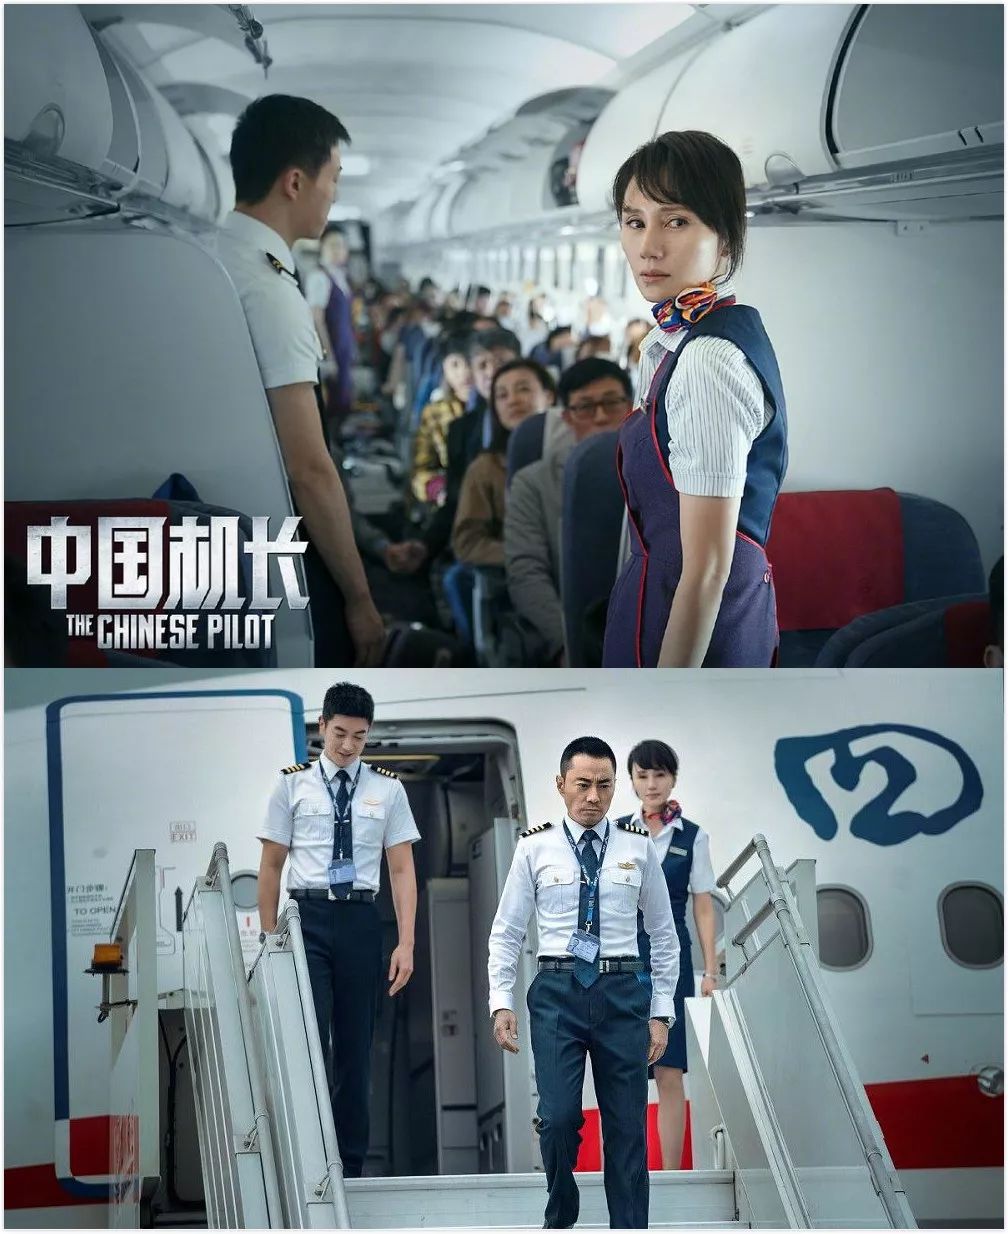 电影《中国机长》剧照，飞机内外部相关景象